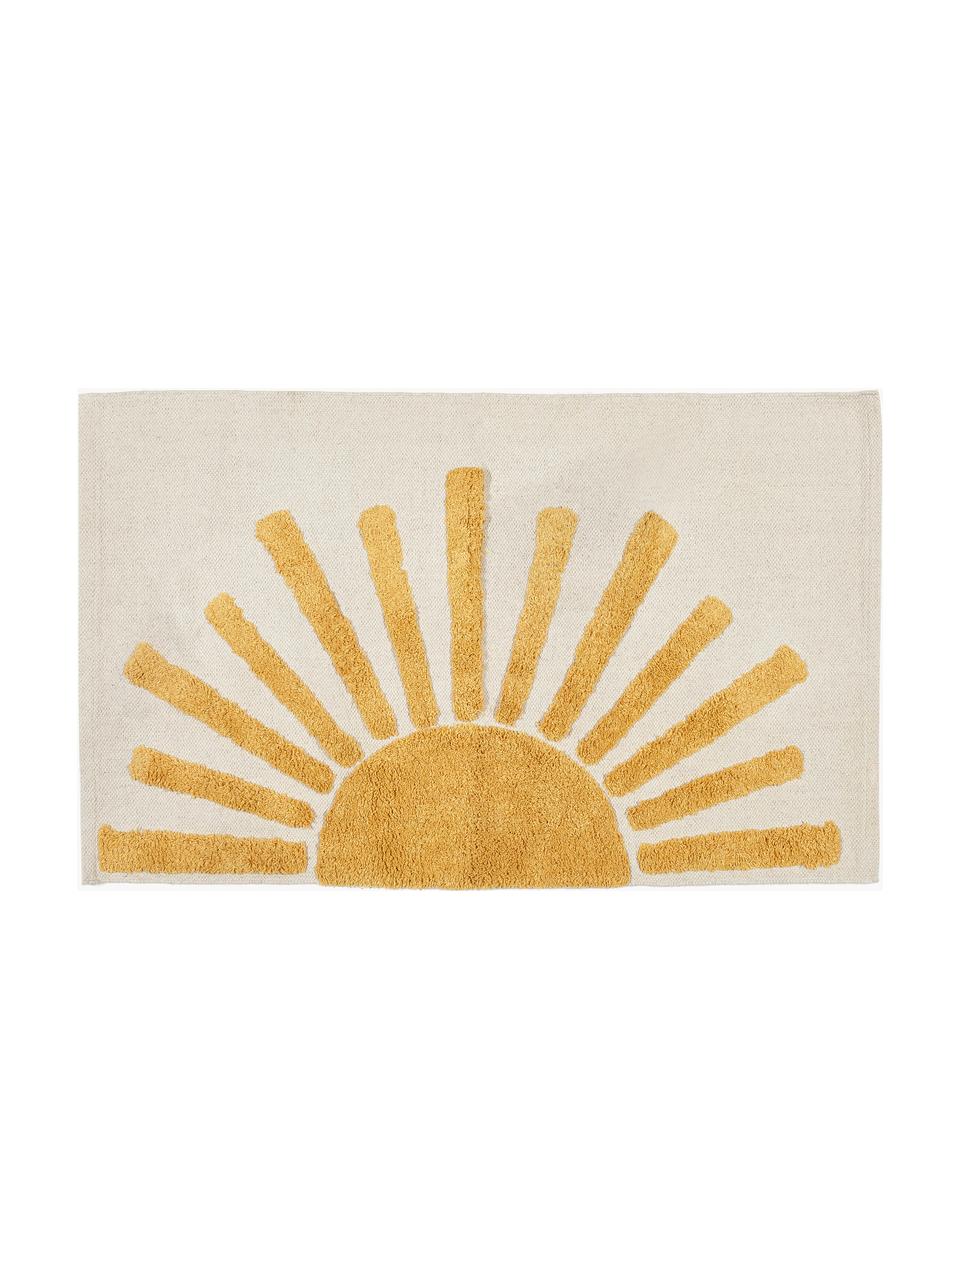 Tappetino da bagno con motivo in rilievo Sun, 100% cotone, Beige chiaro, giallo senape, Larg. 60 x Lung. 90 cm